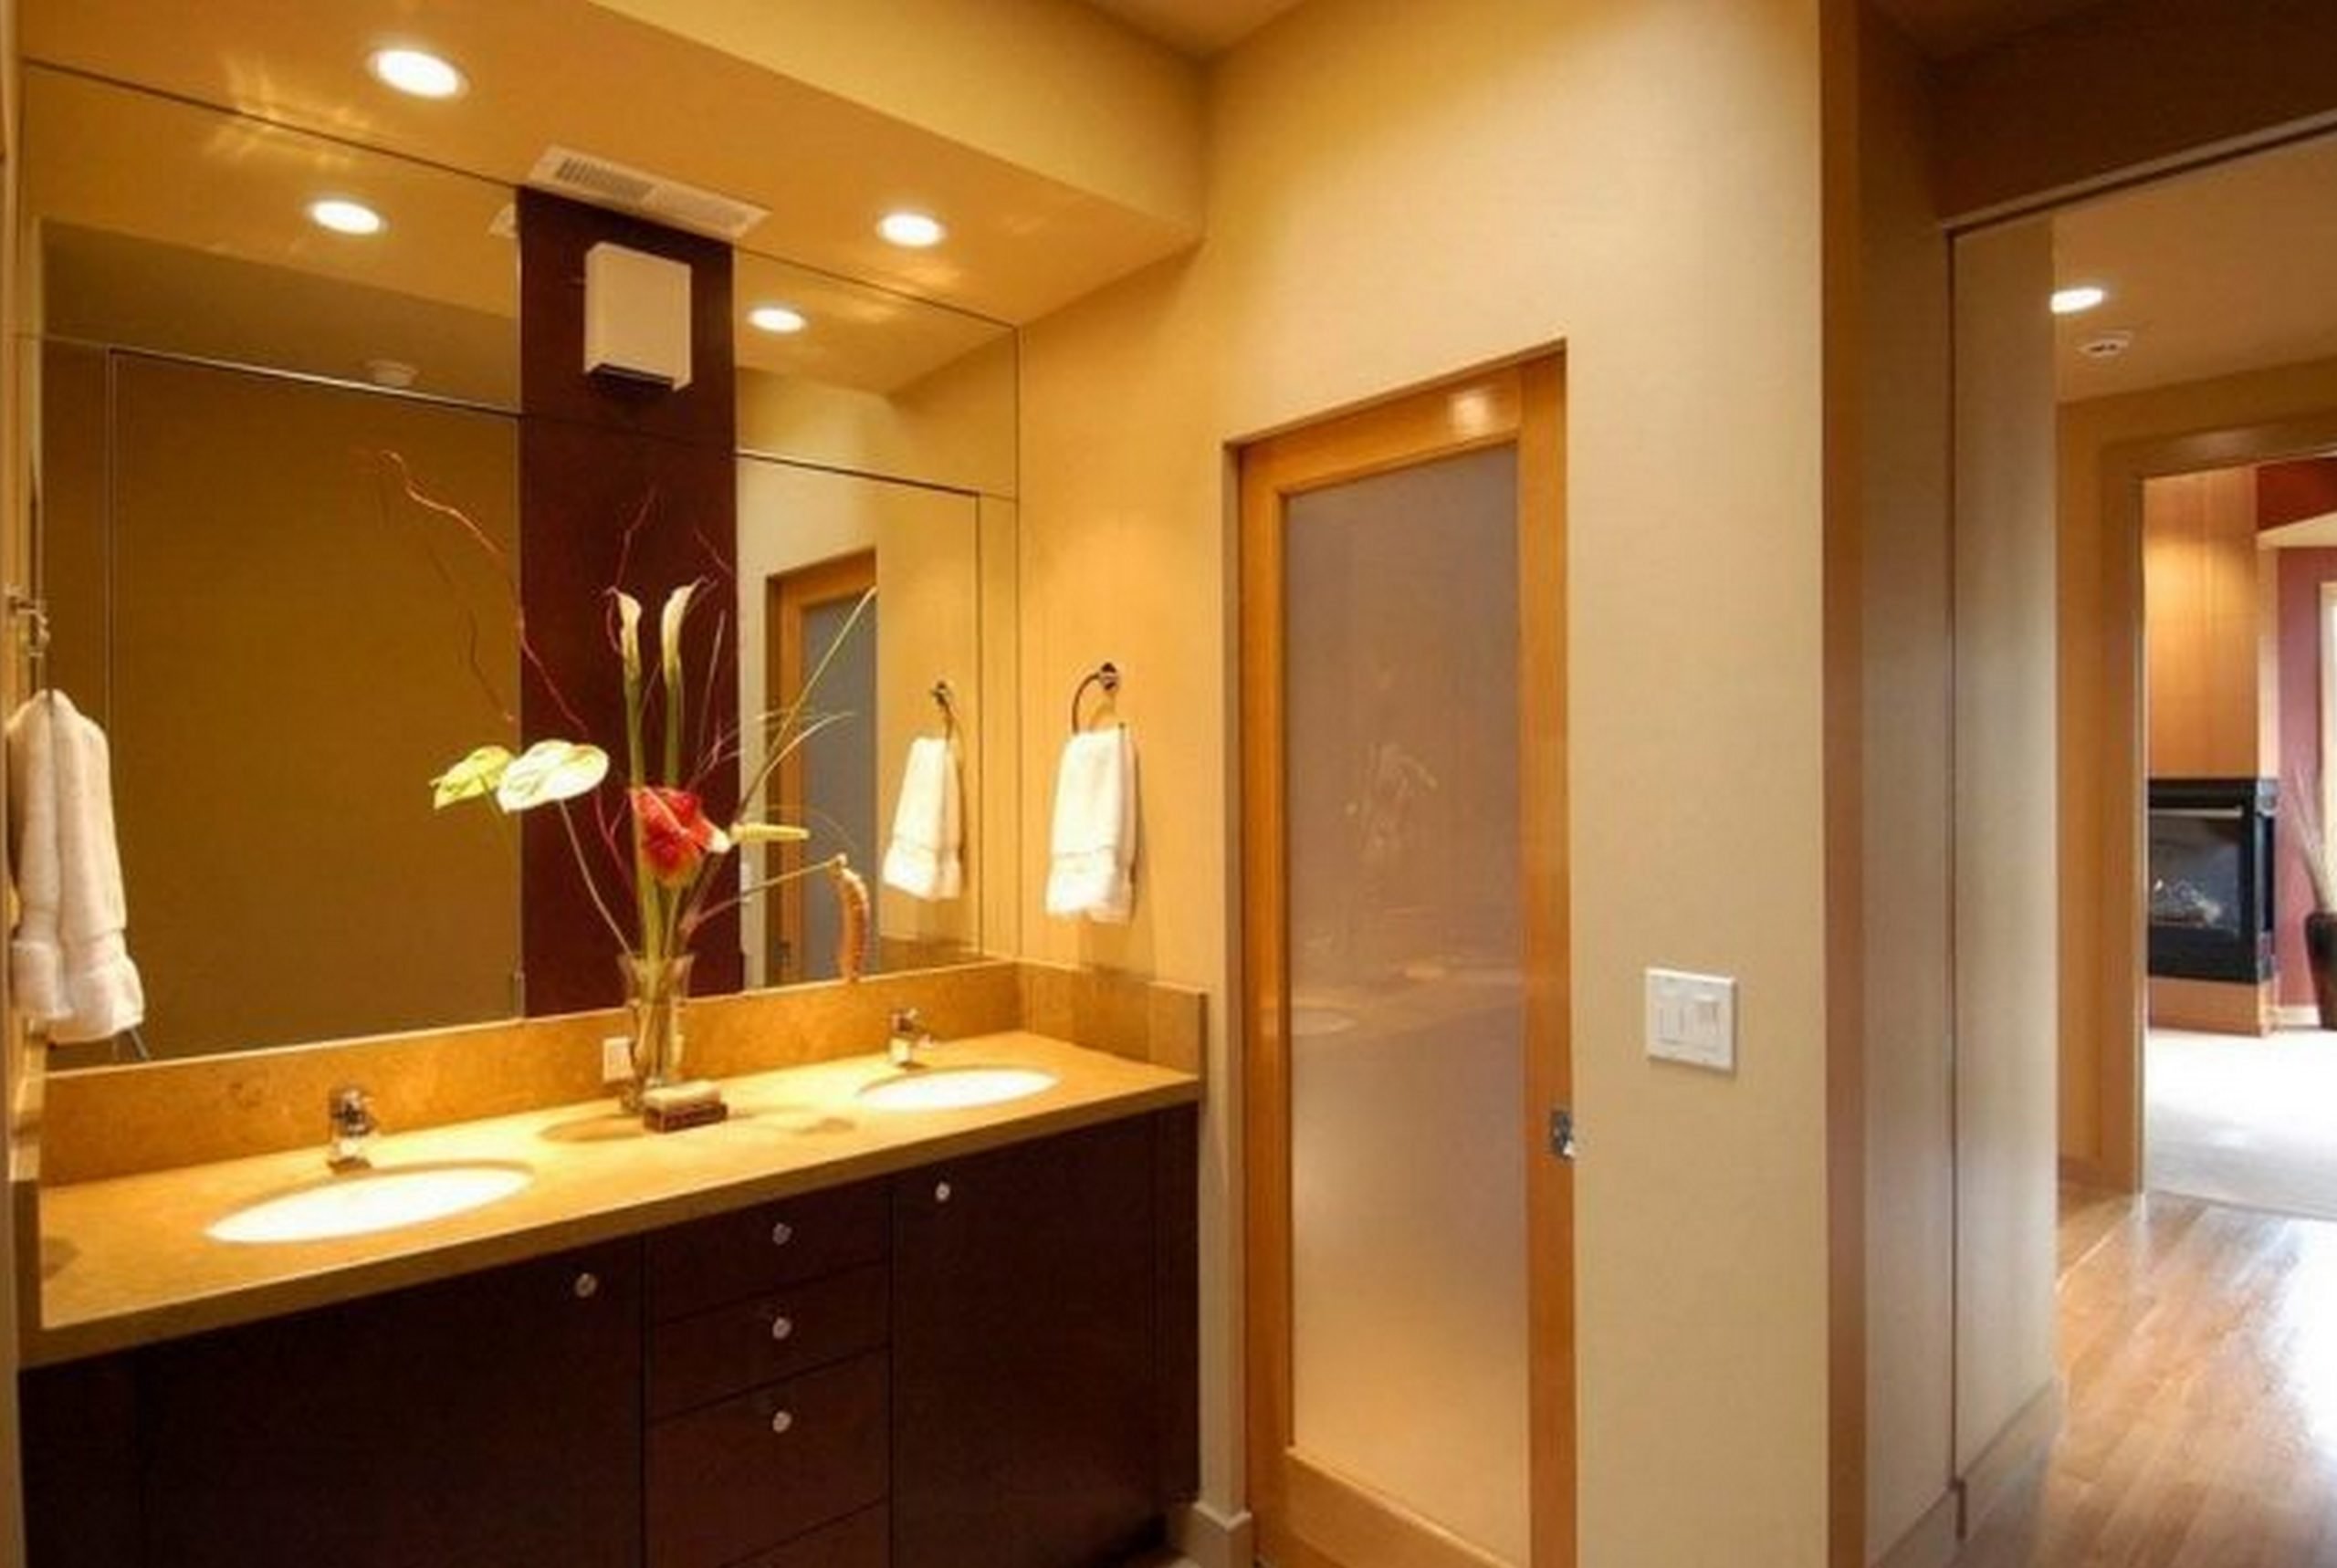 Двери в ванной комнате фото. Стеклянные двери для ванной комнаты. Межкомнатные двери в ванную комнату. Стеклянные двери в ванную и туалет. Стеклянная дверь в ванную.